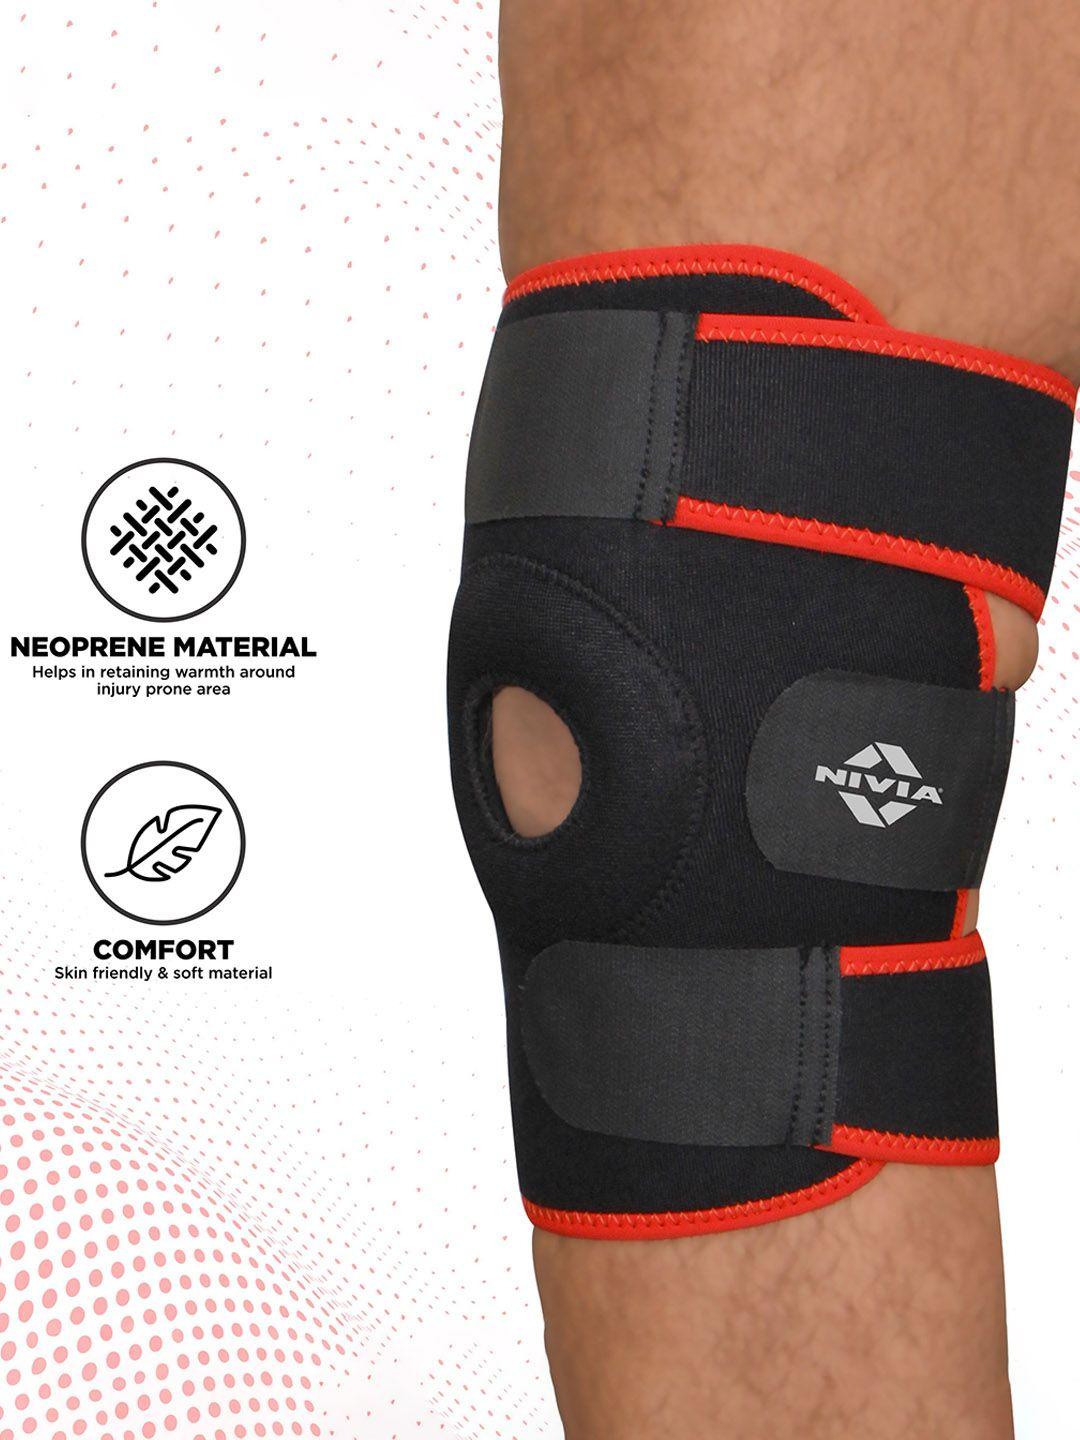 nivia orthopedic adjustable knee support with patella hole